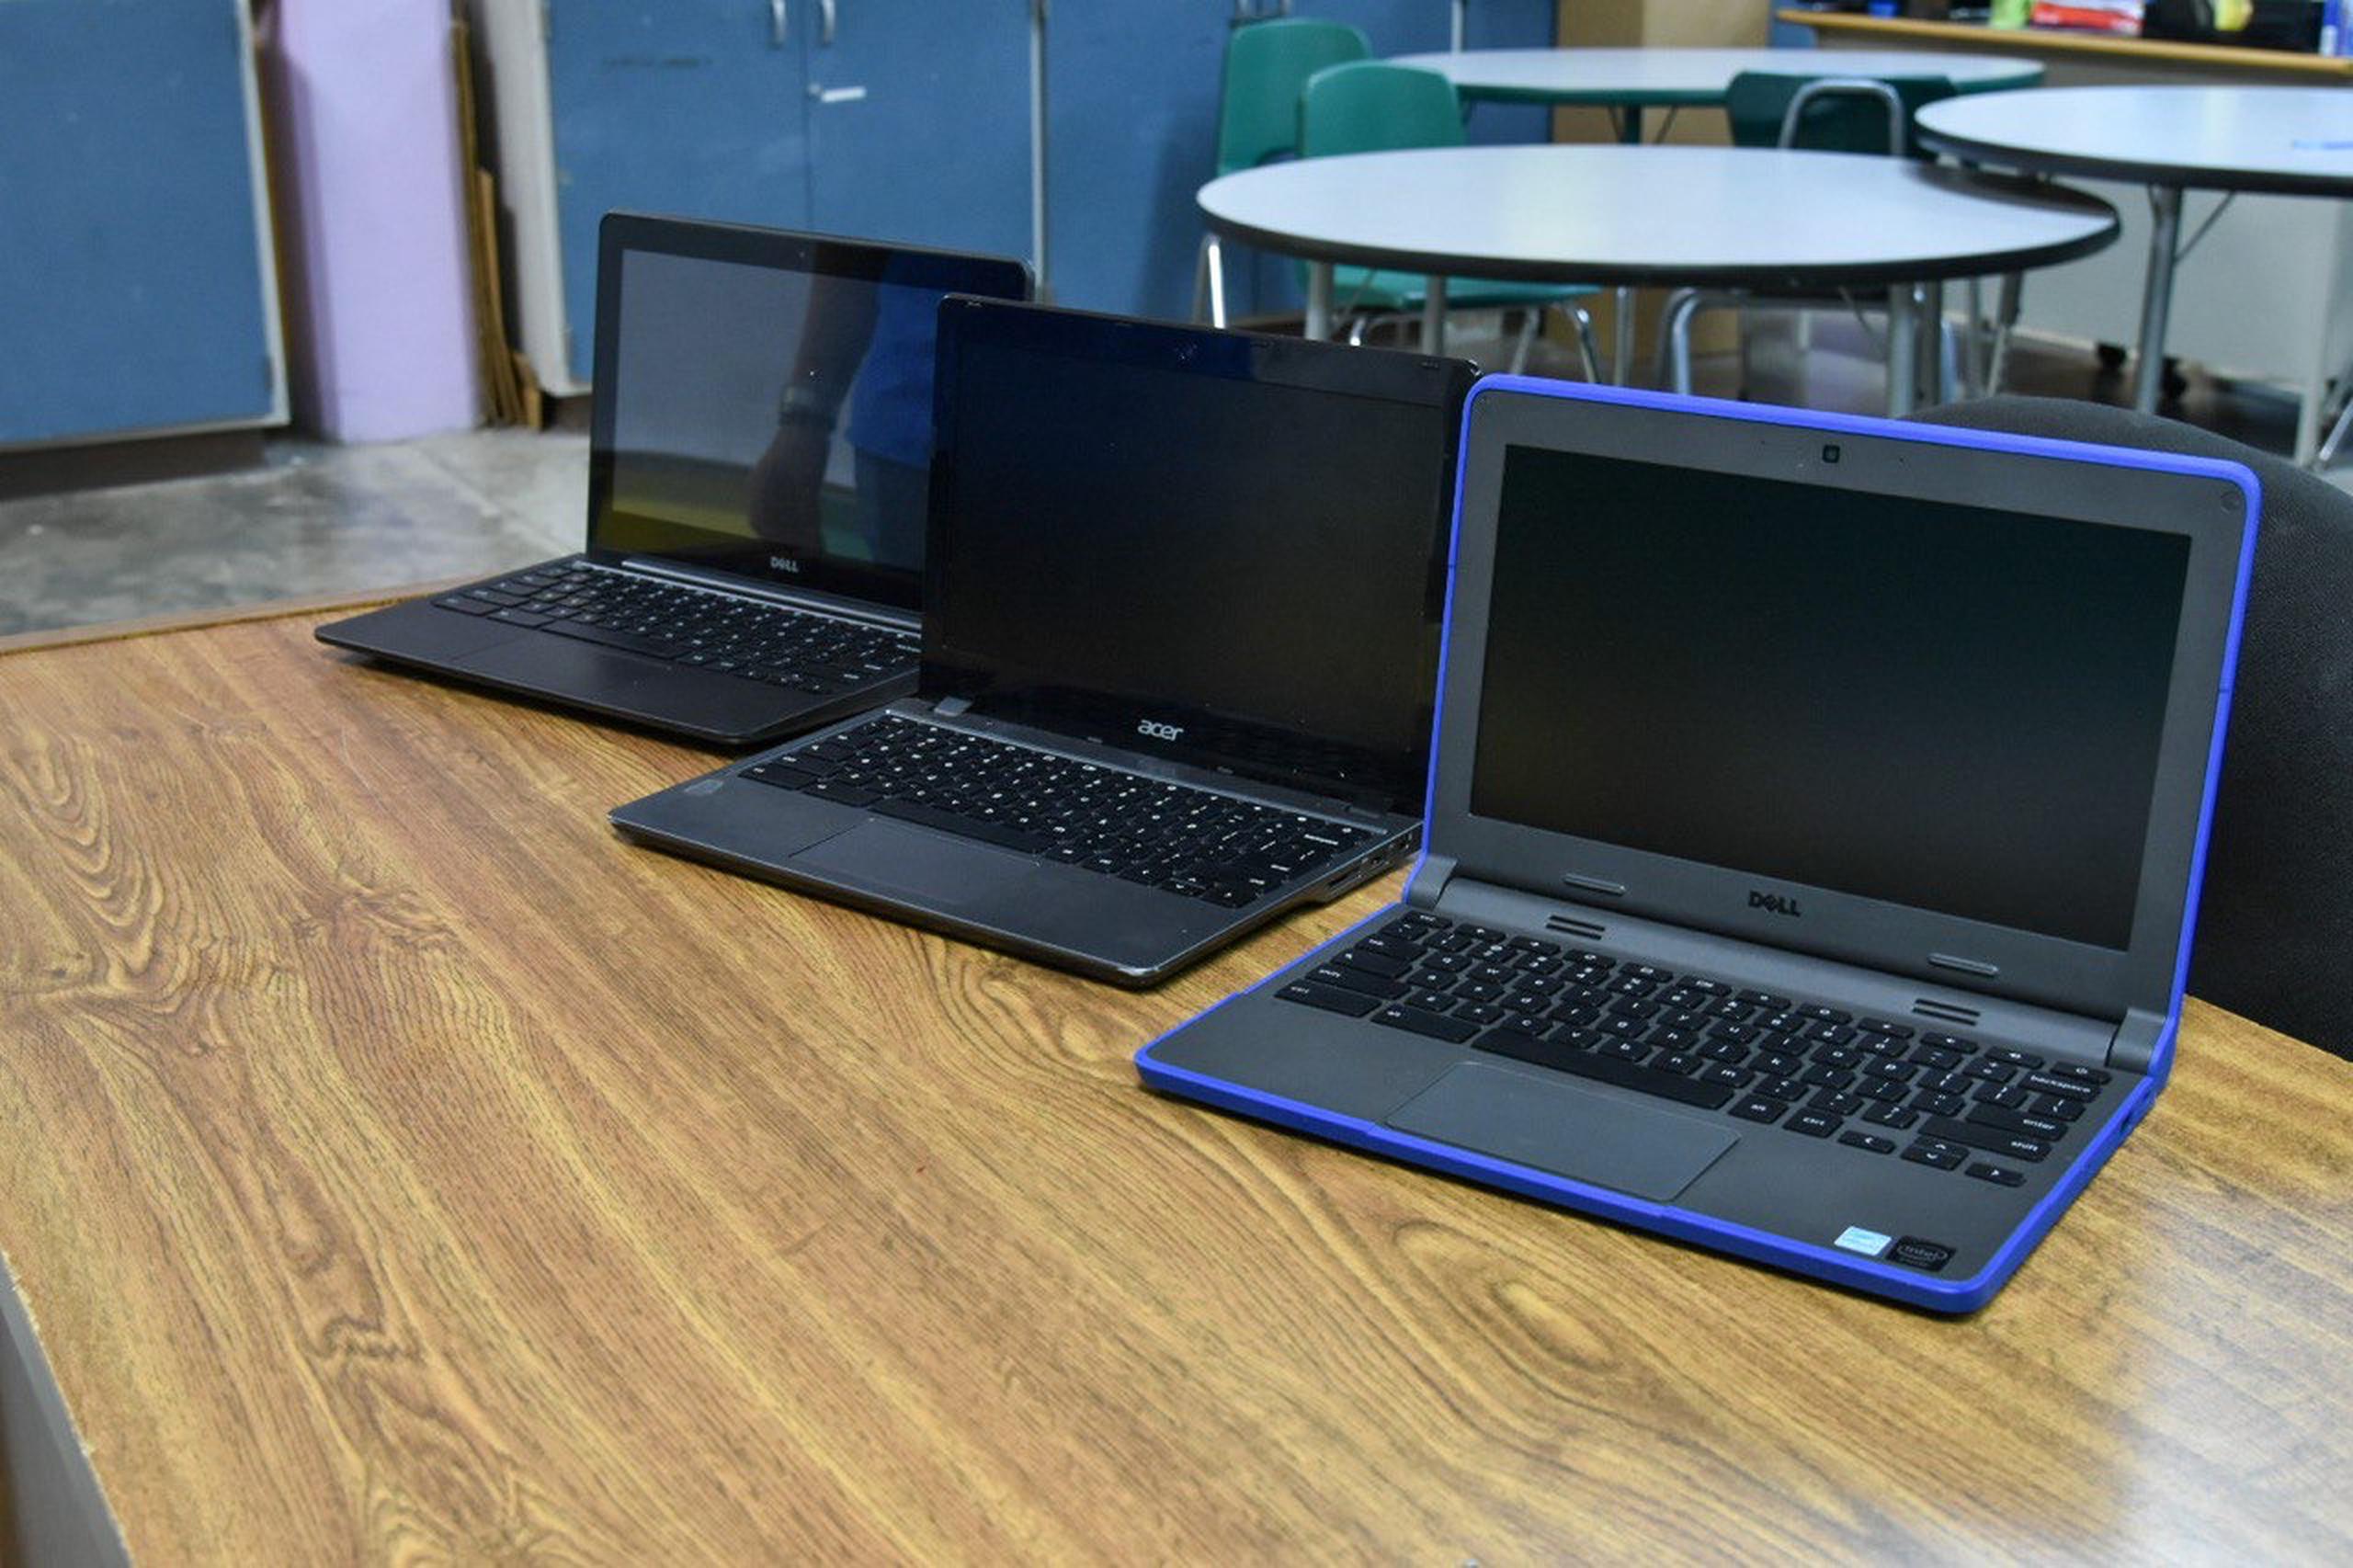 Las laptops fueron transportadas y distribuidas a los centros educativos de ambas islas por la organización Puerto Rico Education Foundation.